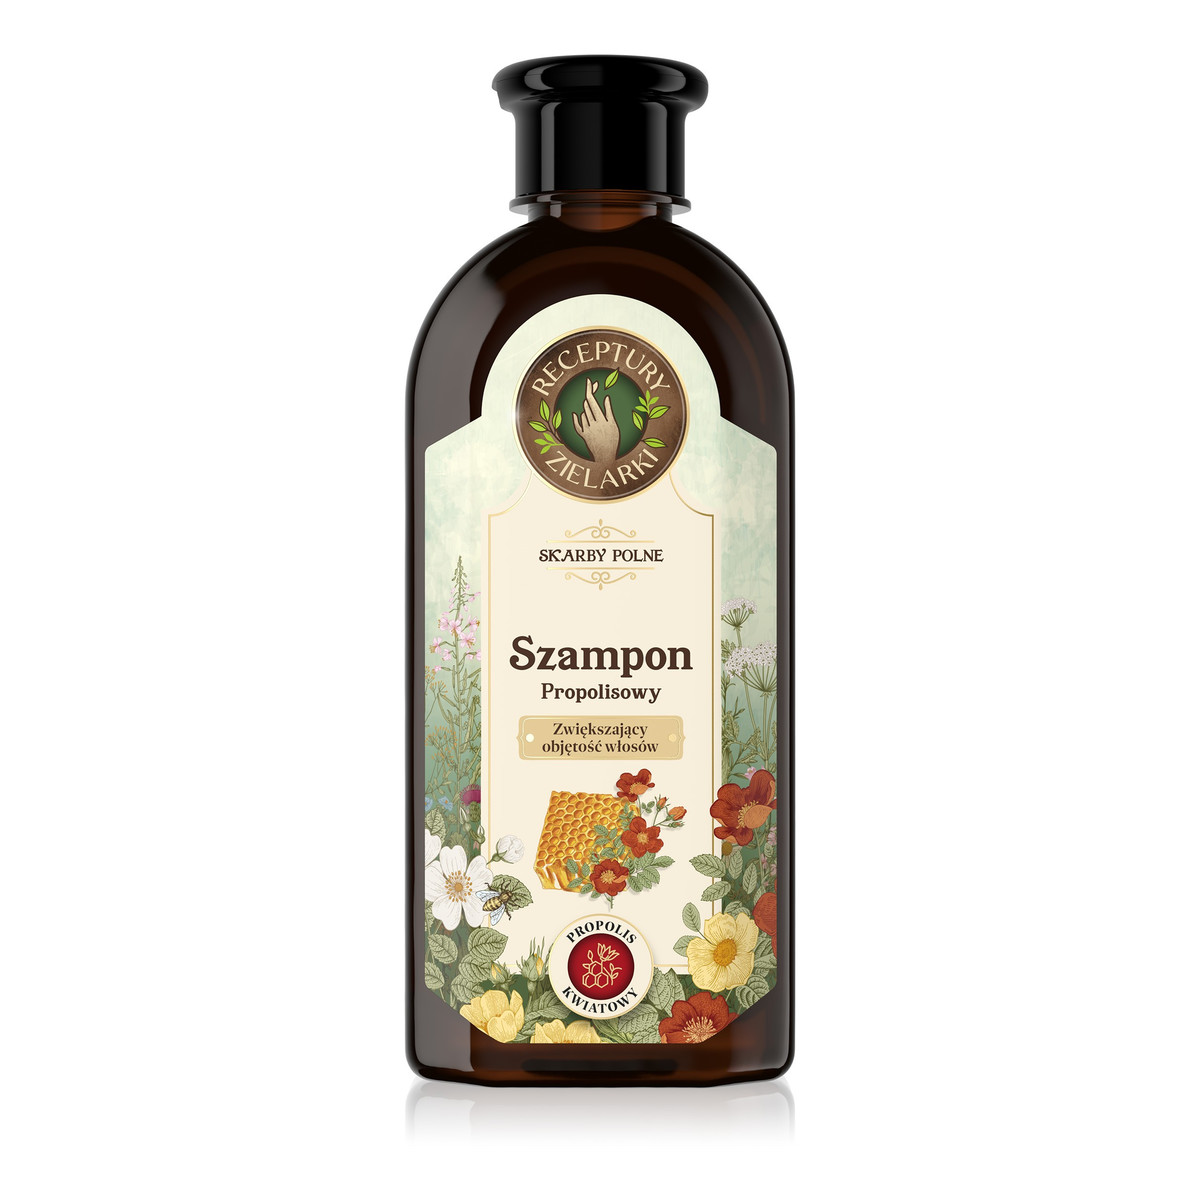 Receptury Zielarki Skarby Polne szampon z propolisem kwiatowym zwiększający objętość włosów 350ml